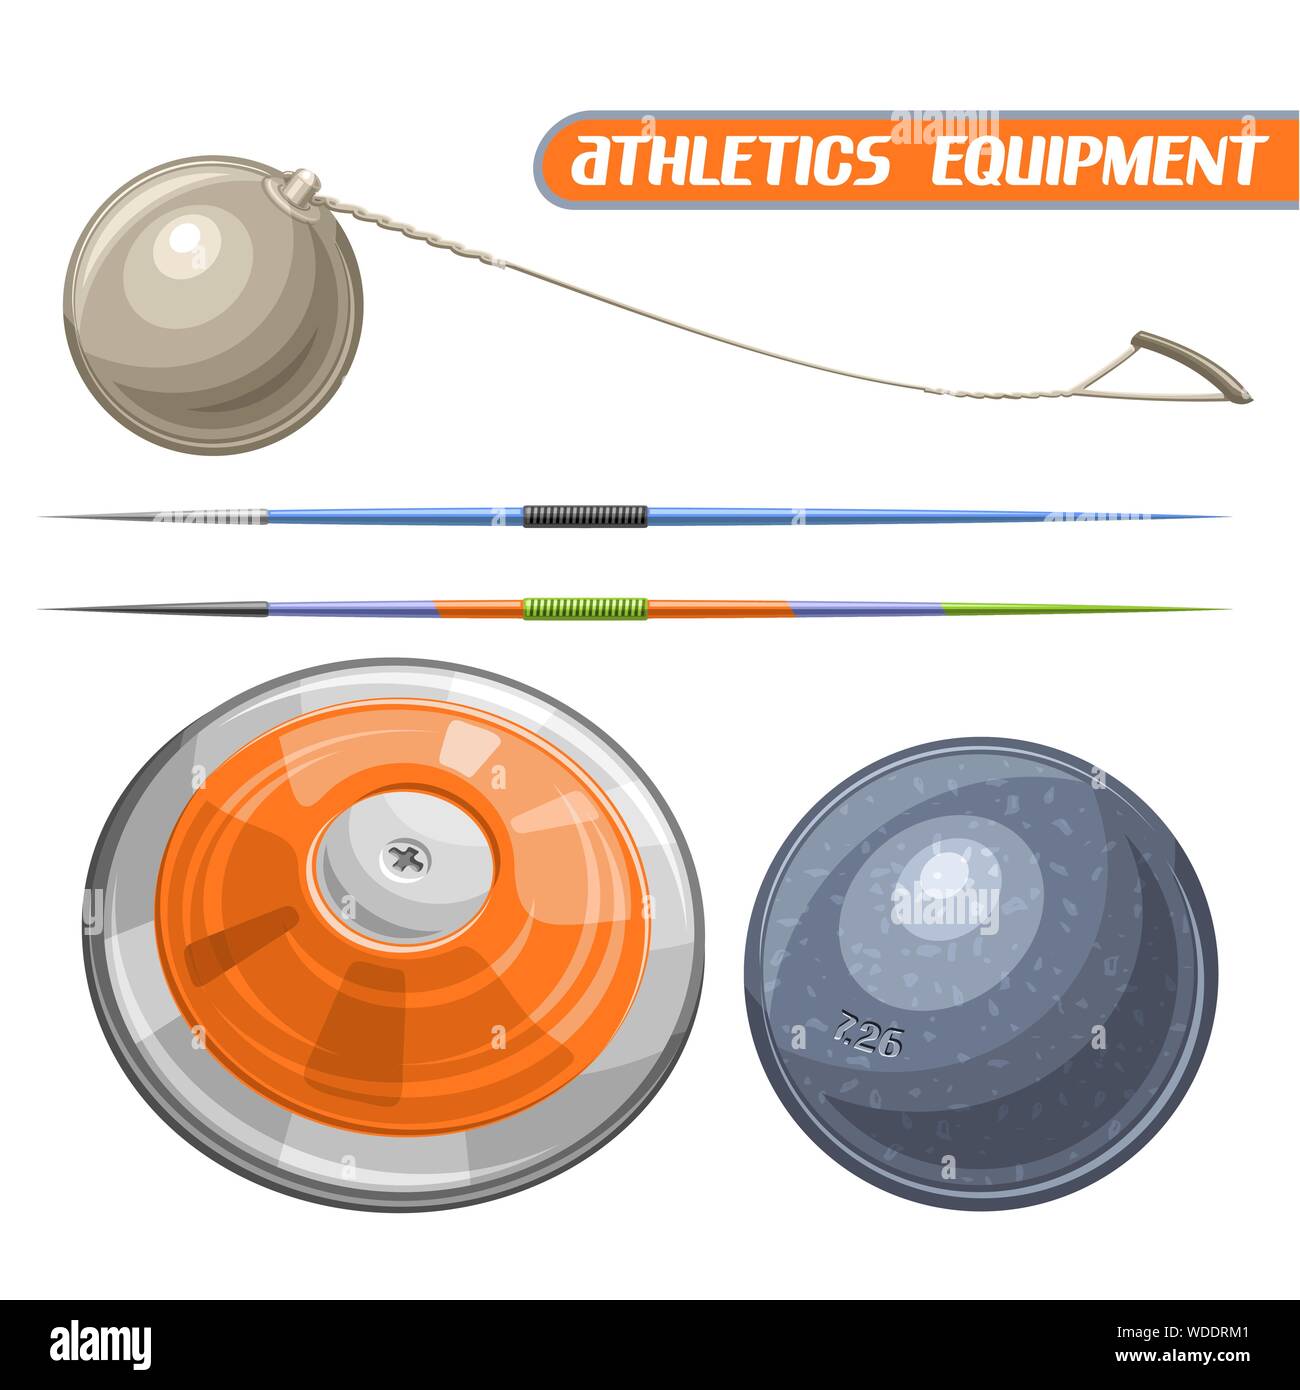 Vector Icons für Athletik Ausrüstung, bestehend aus abstrakten Metall Diskuswerfen, Kugelstoßen, Hammer, Speer werfen. Ausrüstungsgegenstände für Leichtathletik für atl Stock Vektor